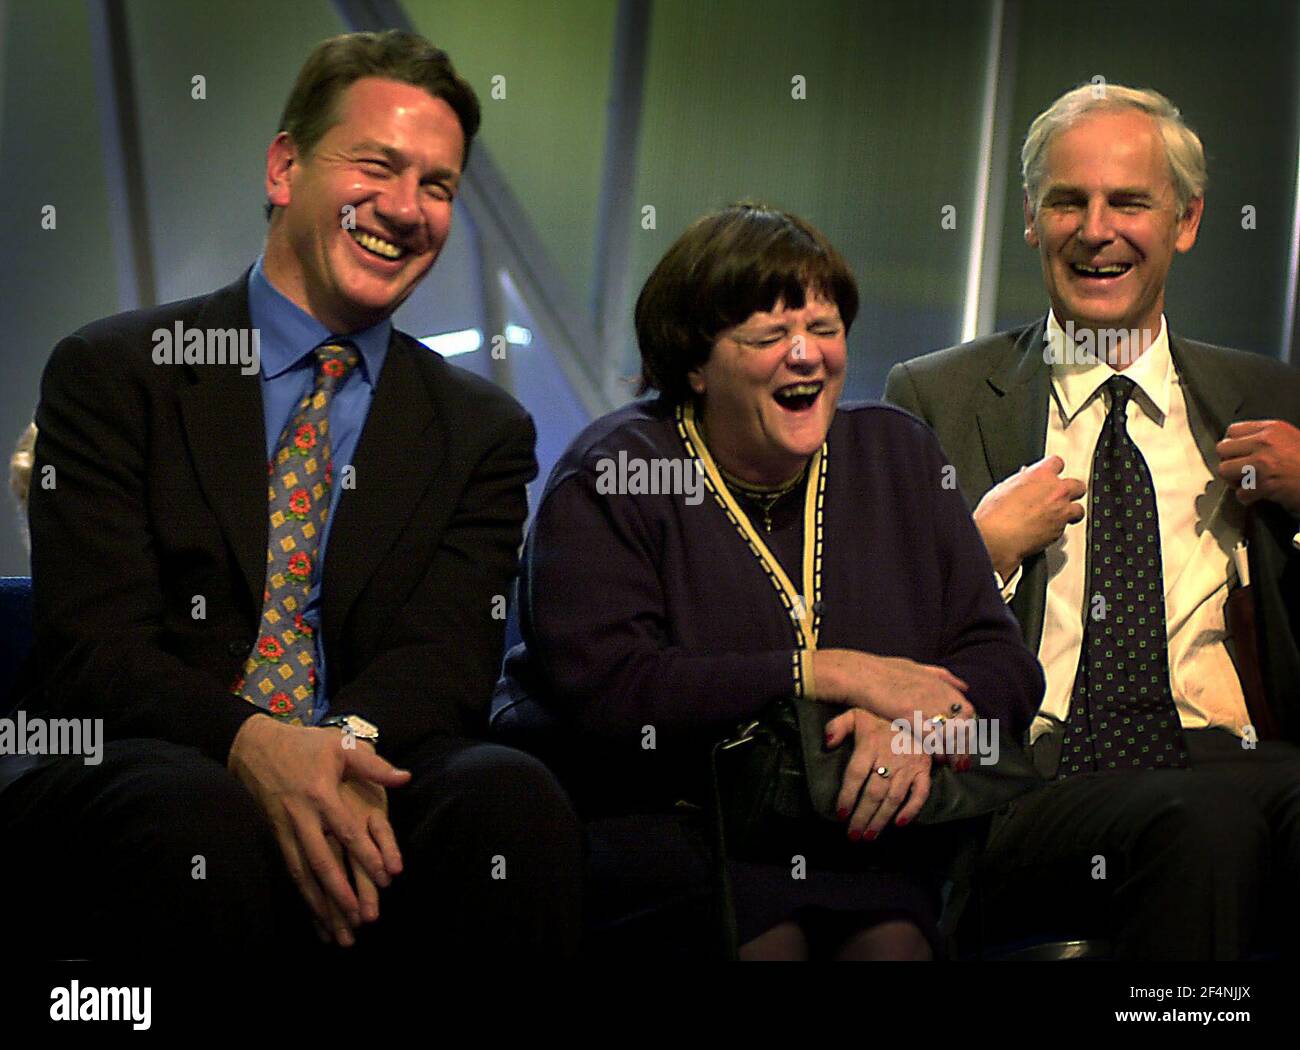 Michael Portillo , Ann WiddeCBe e David Heathcoat-Amory ridono a Jim Davison alla Conferenza del Partito conservatore 2000a Bournemouth Foto Stock